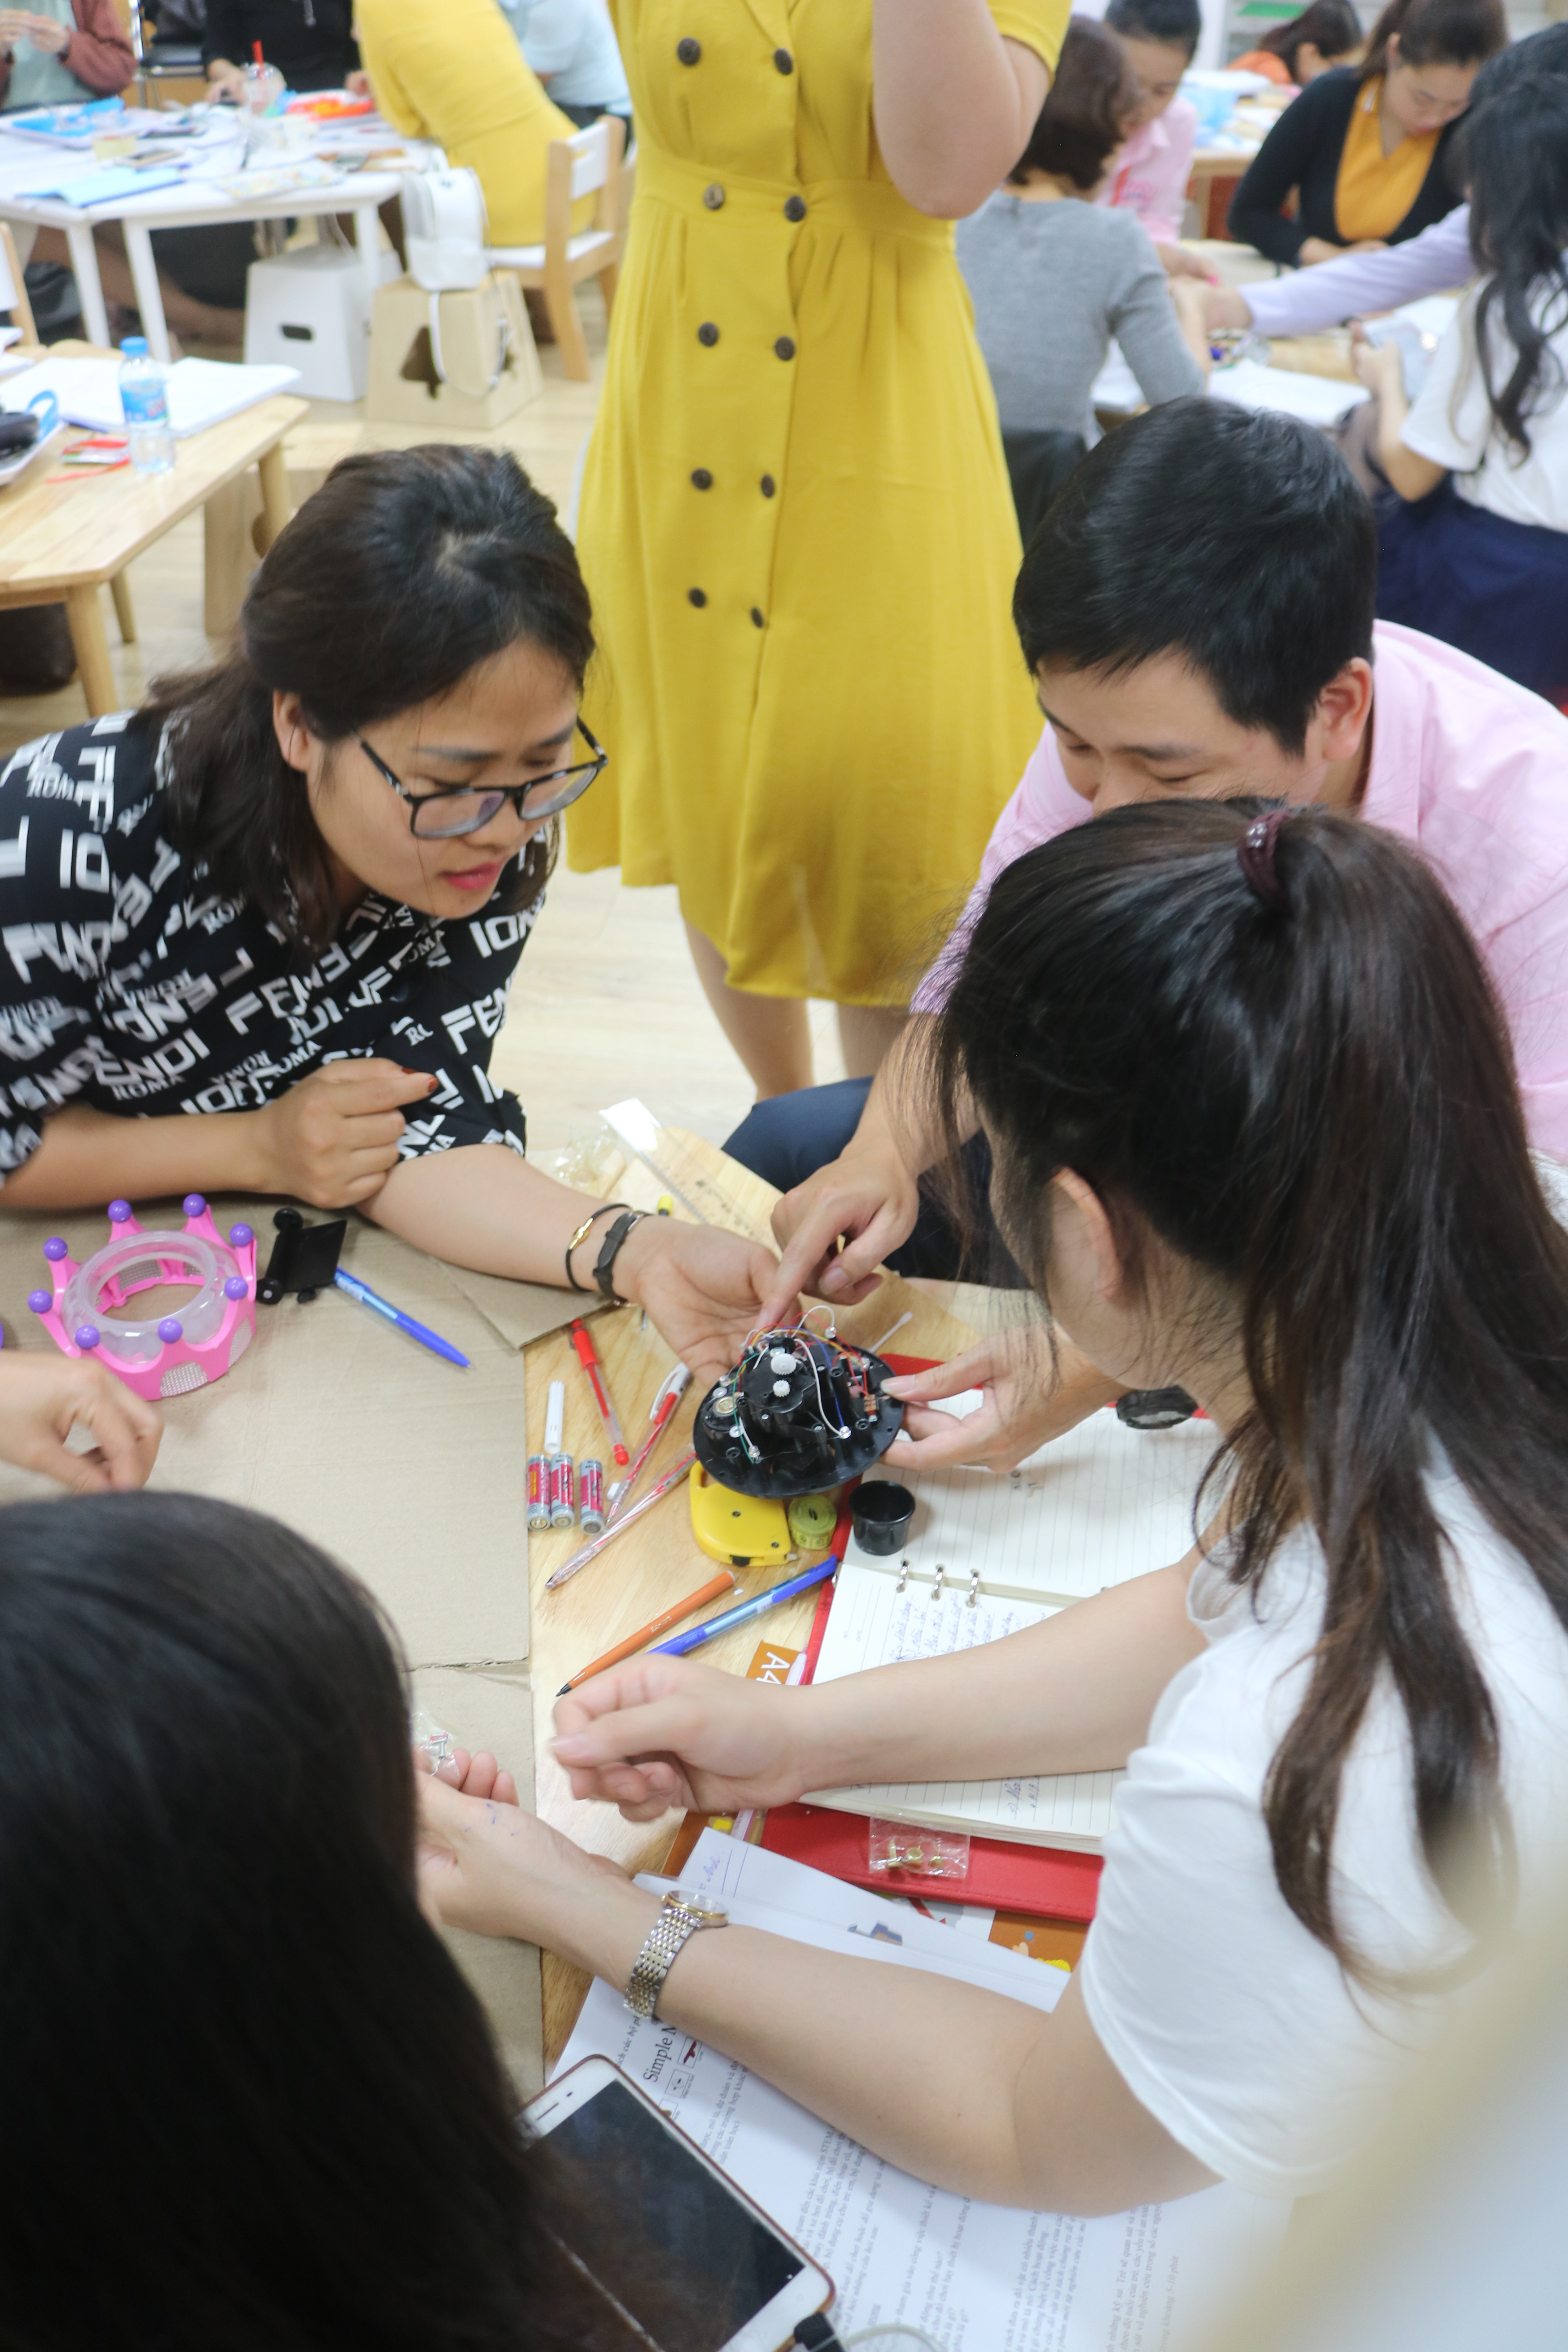 STEM teacher training Vietnam STEAMeGarten Apax by Dr. Diana Wehrell-Grabowski